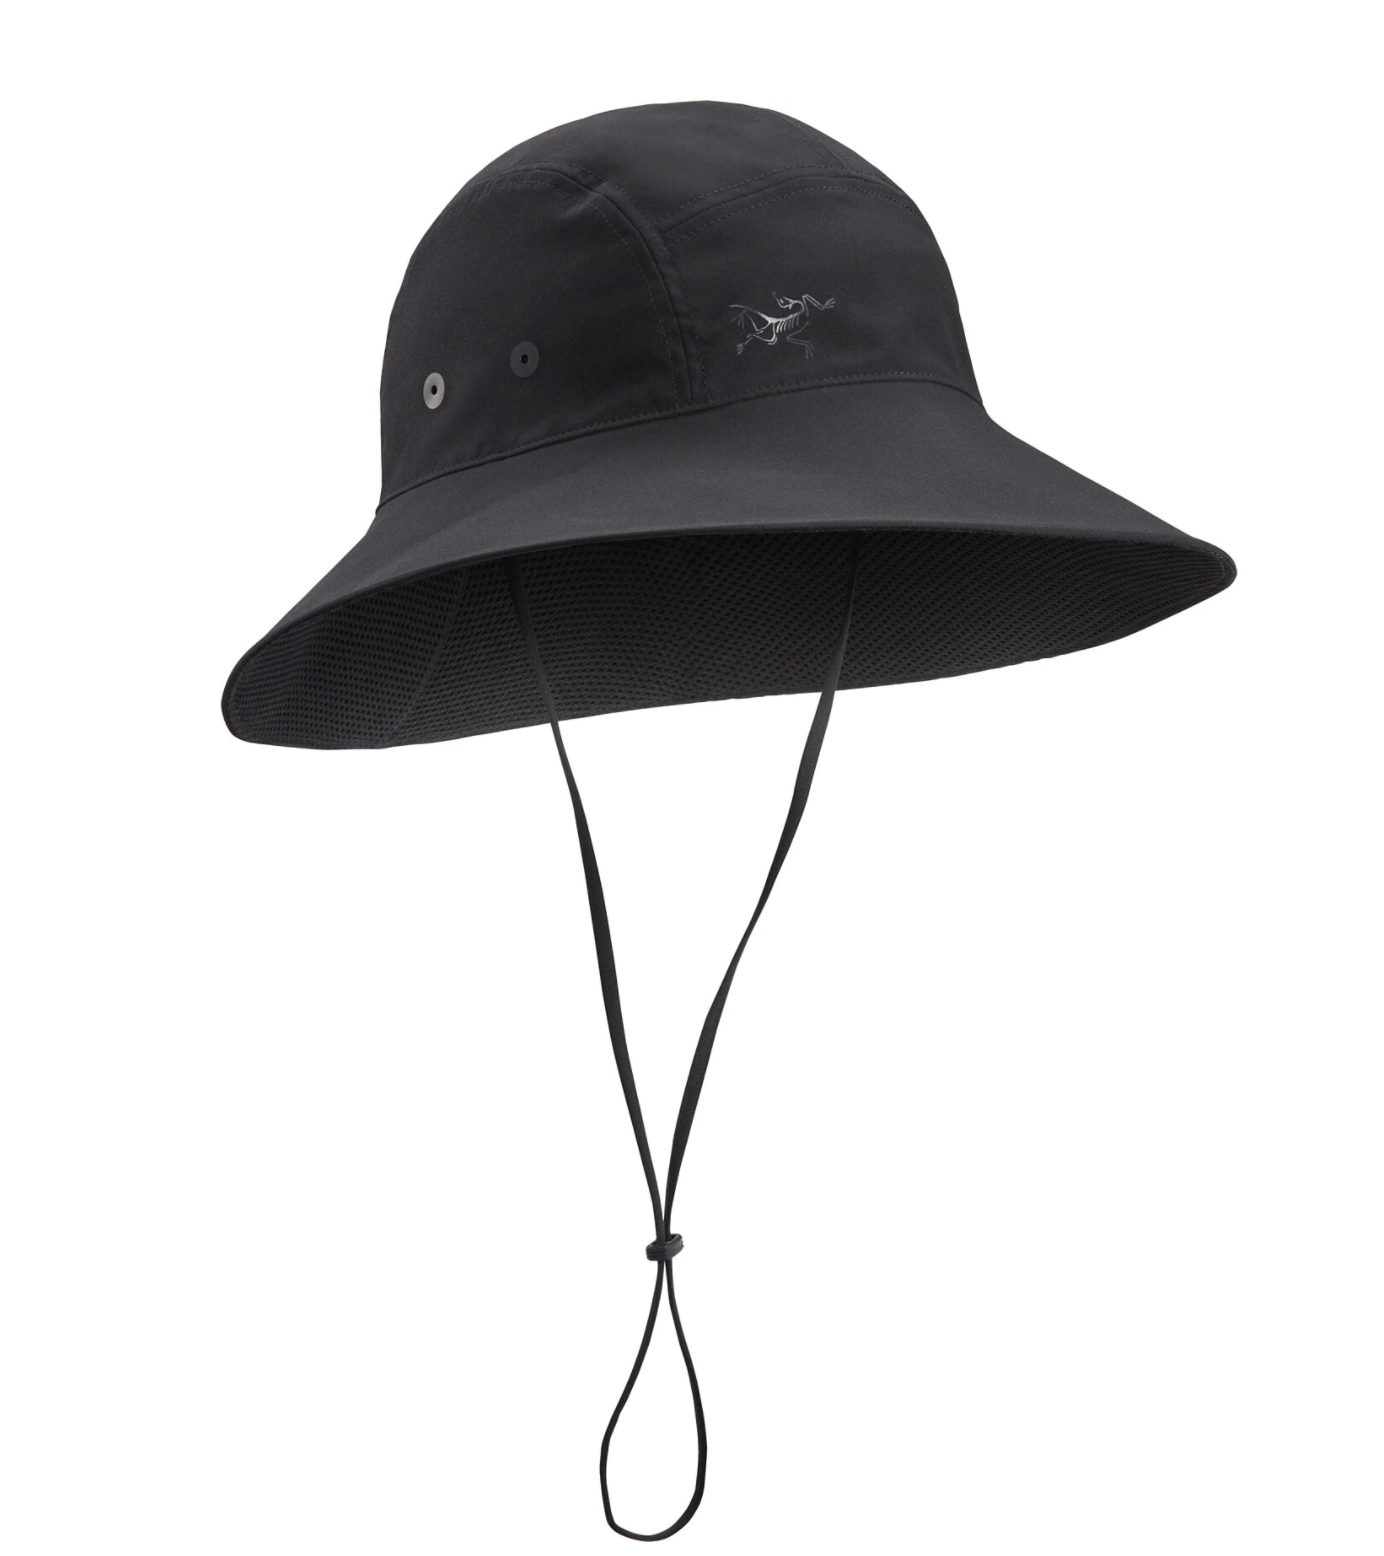 2021行山太陽帽推薦丨10款$199至$550包括Arc'teryx、Columbia及Salomon防曬防UV太陽帽精選